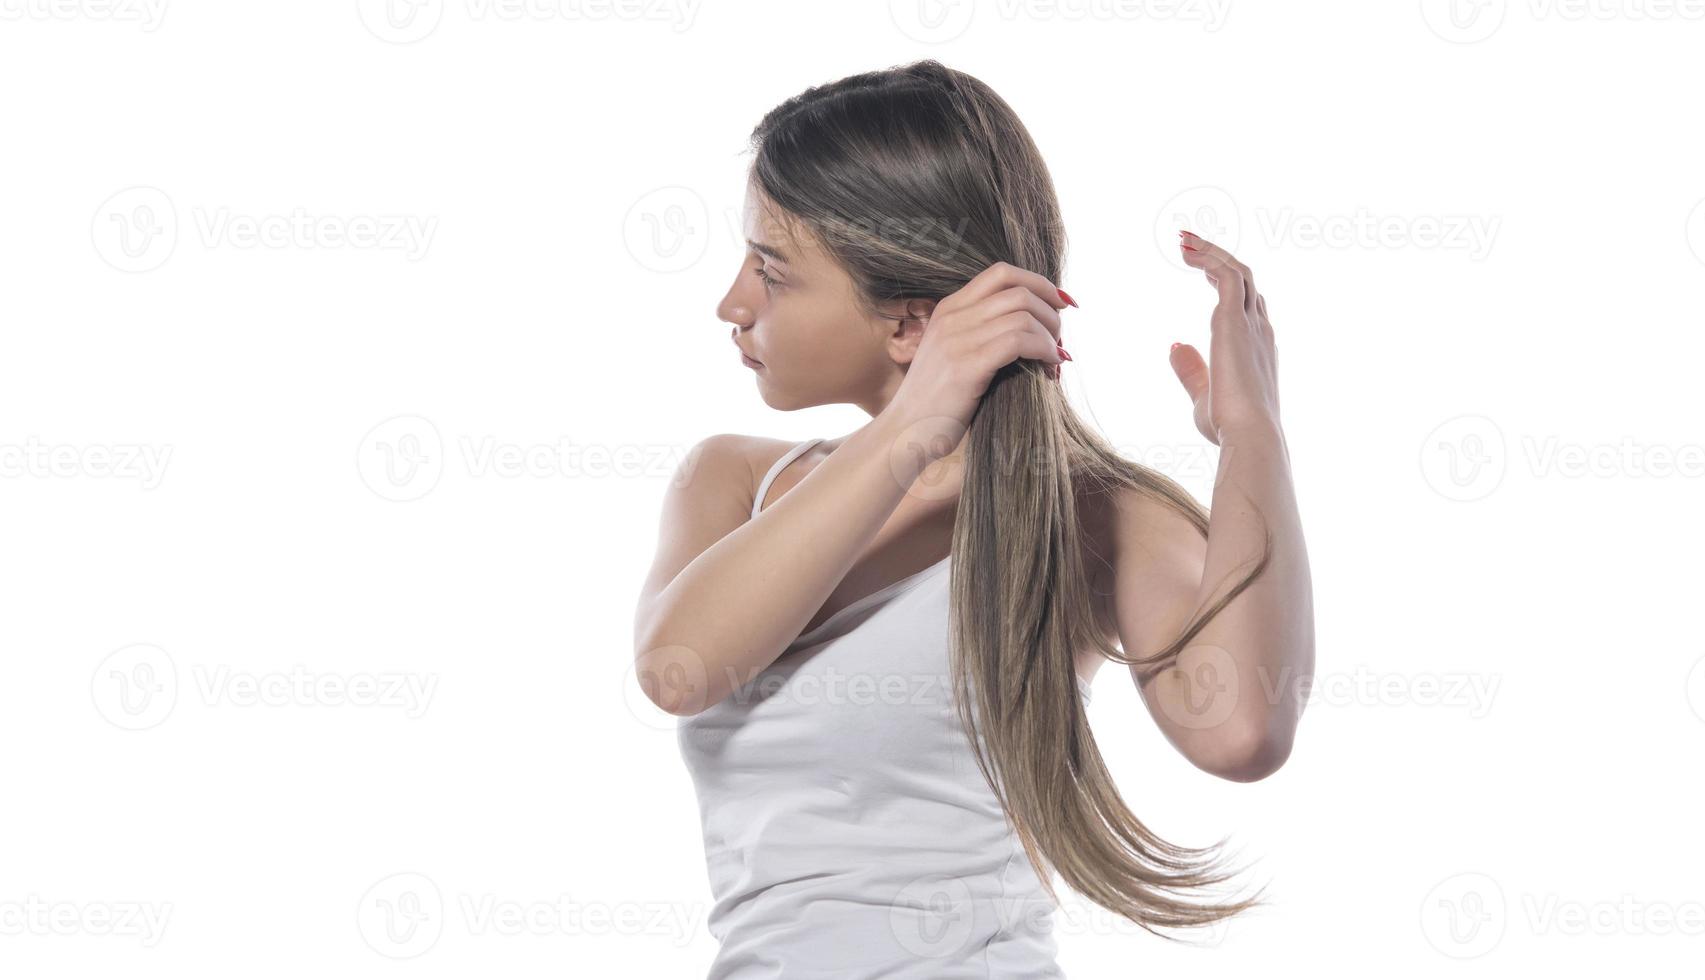 eine junge schöne frau band ihr haar mit einem gummiband zusammen foto